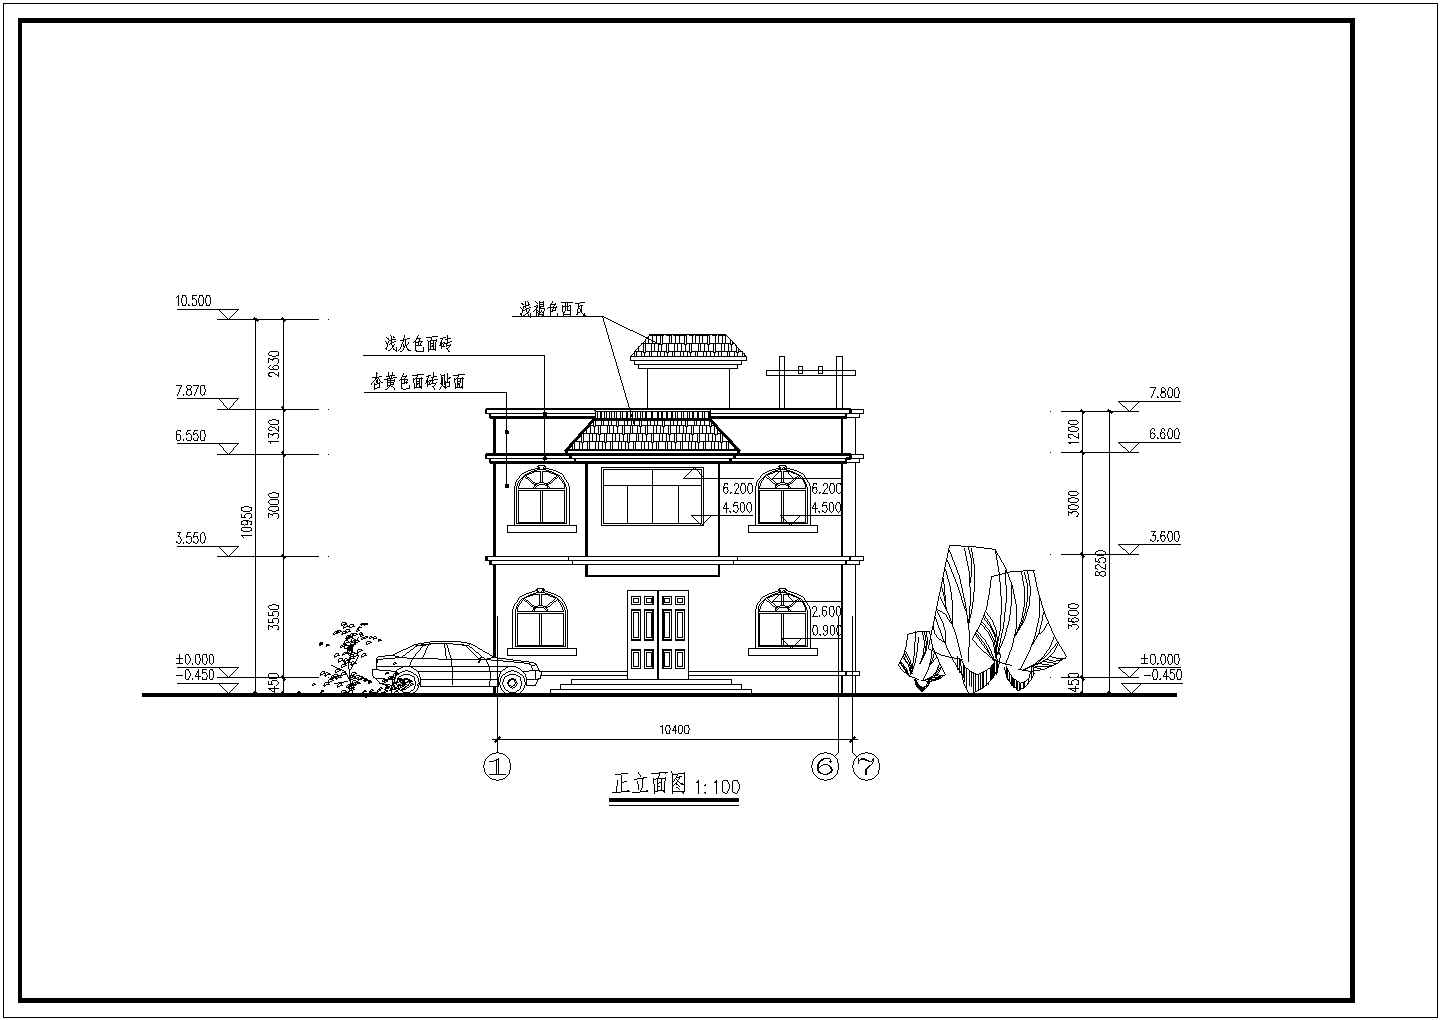 两层长10.40米 宽10.30米农村自建房建筑结构图CAD施工图